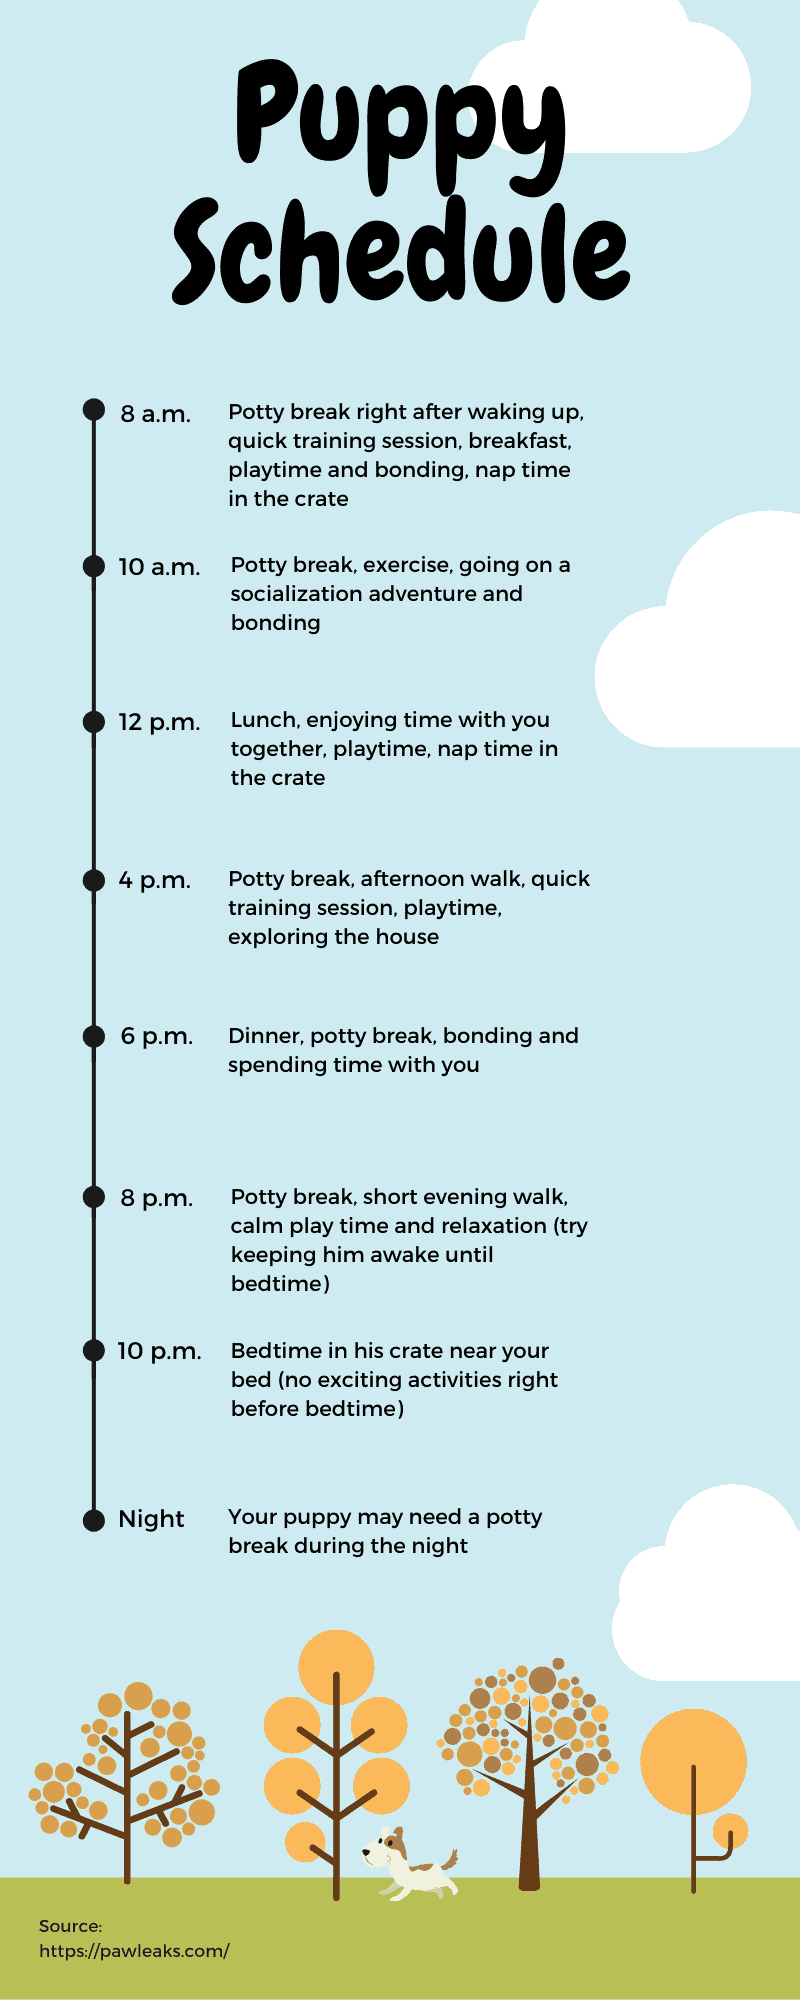 Puppy schedule infographic.